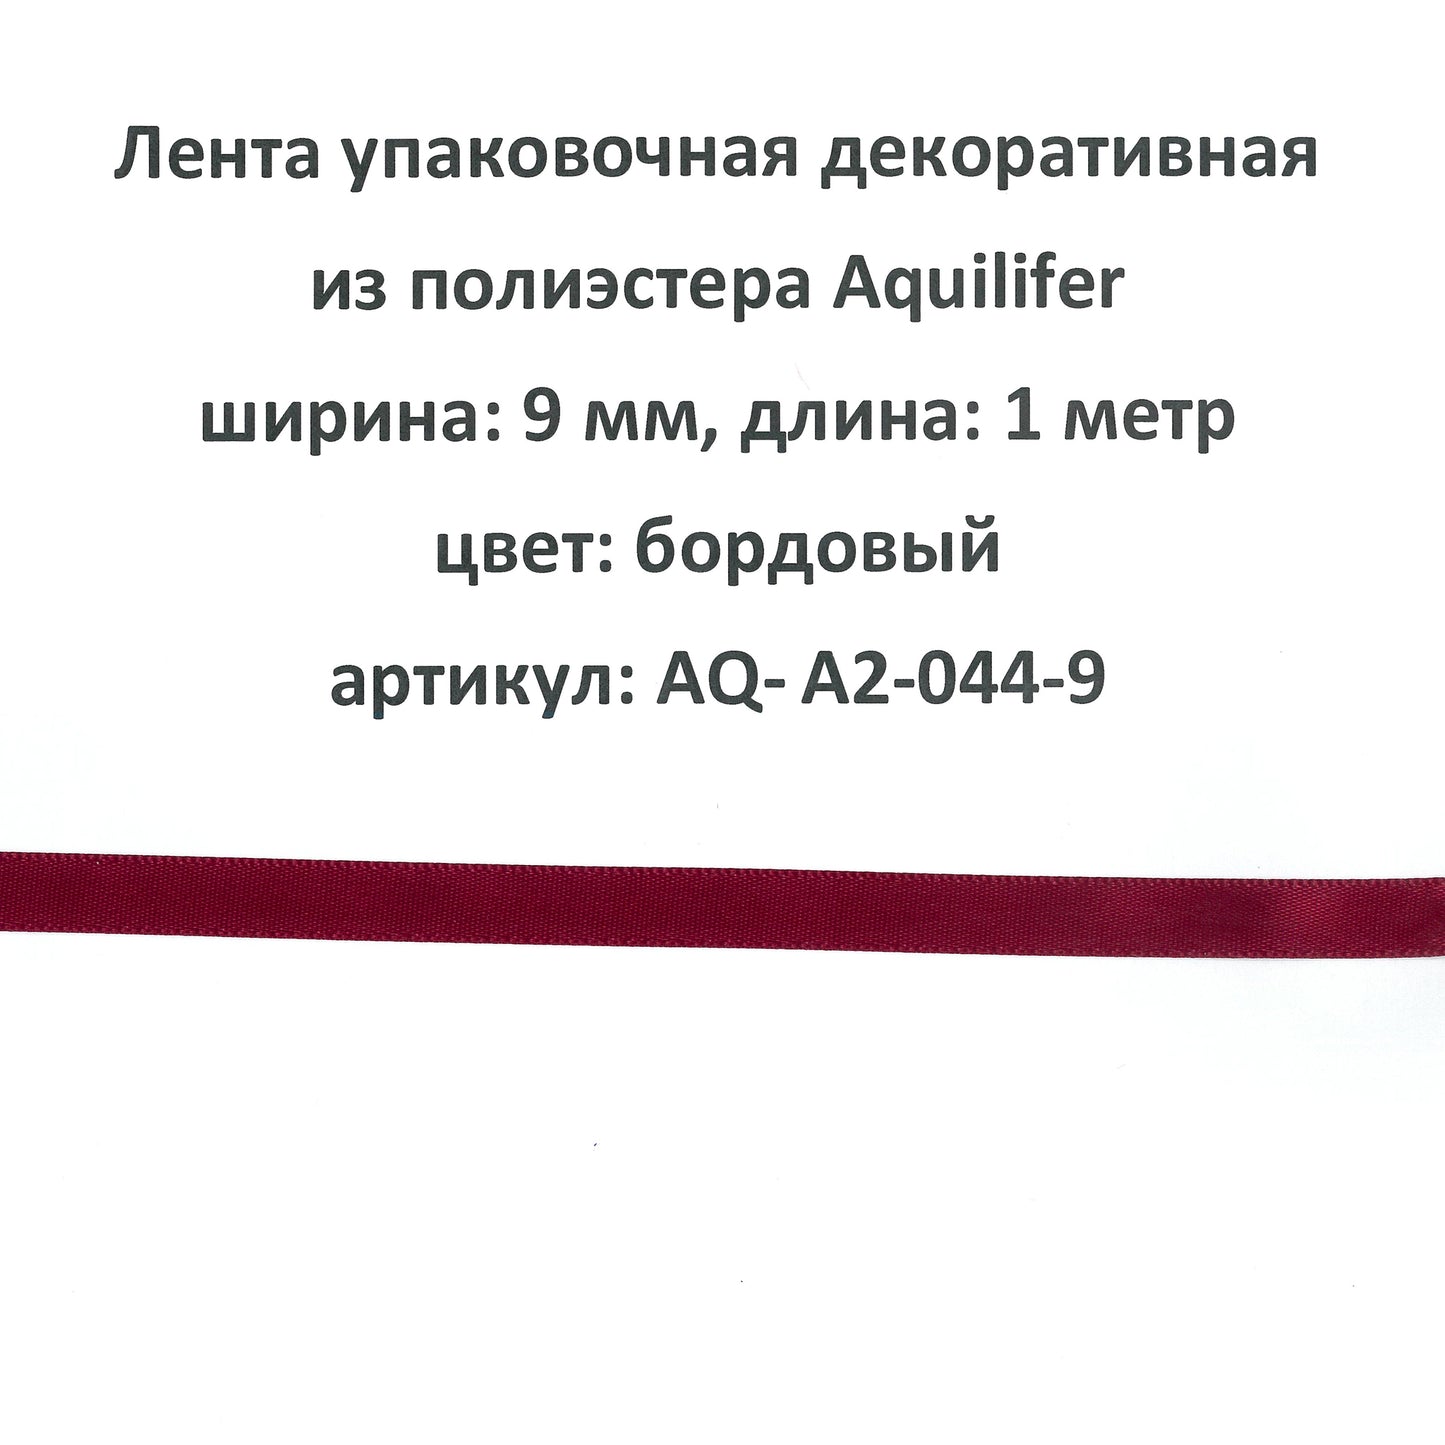 AQ-A2-044-9 - лента упаковочная декоративная из полиэстера Aquilifer, ширина: 9 мм, длина: 1 метр, цвет: бордовый